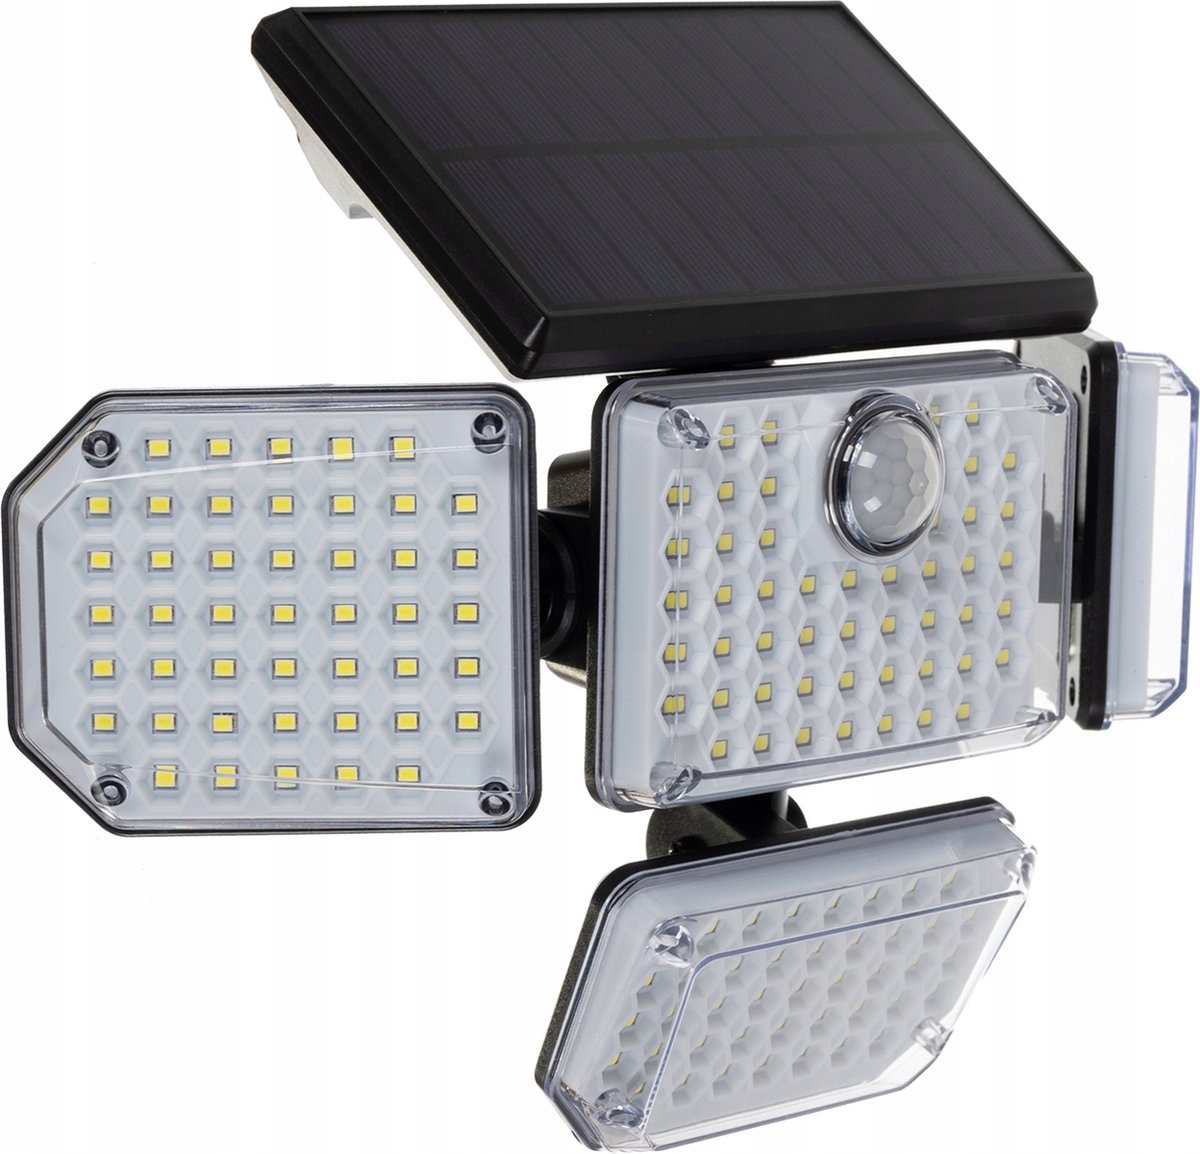 Automatische Solar LED lamp - 171 LED - Bewegingssensor - Zonne-energie - Tuinverlichting voor hek en wand